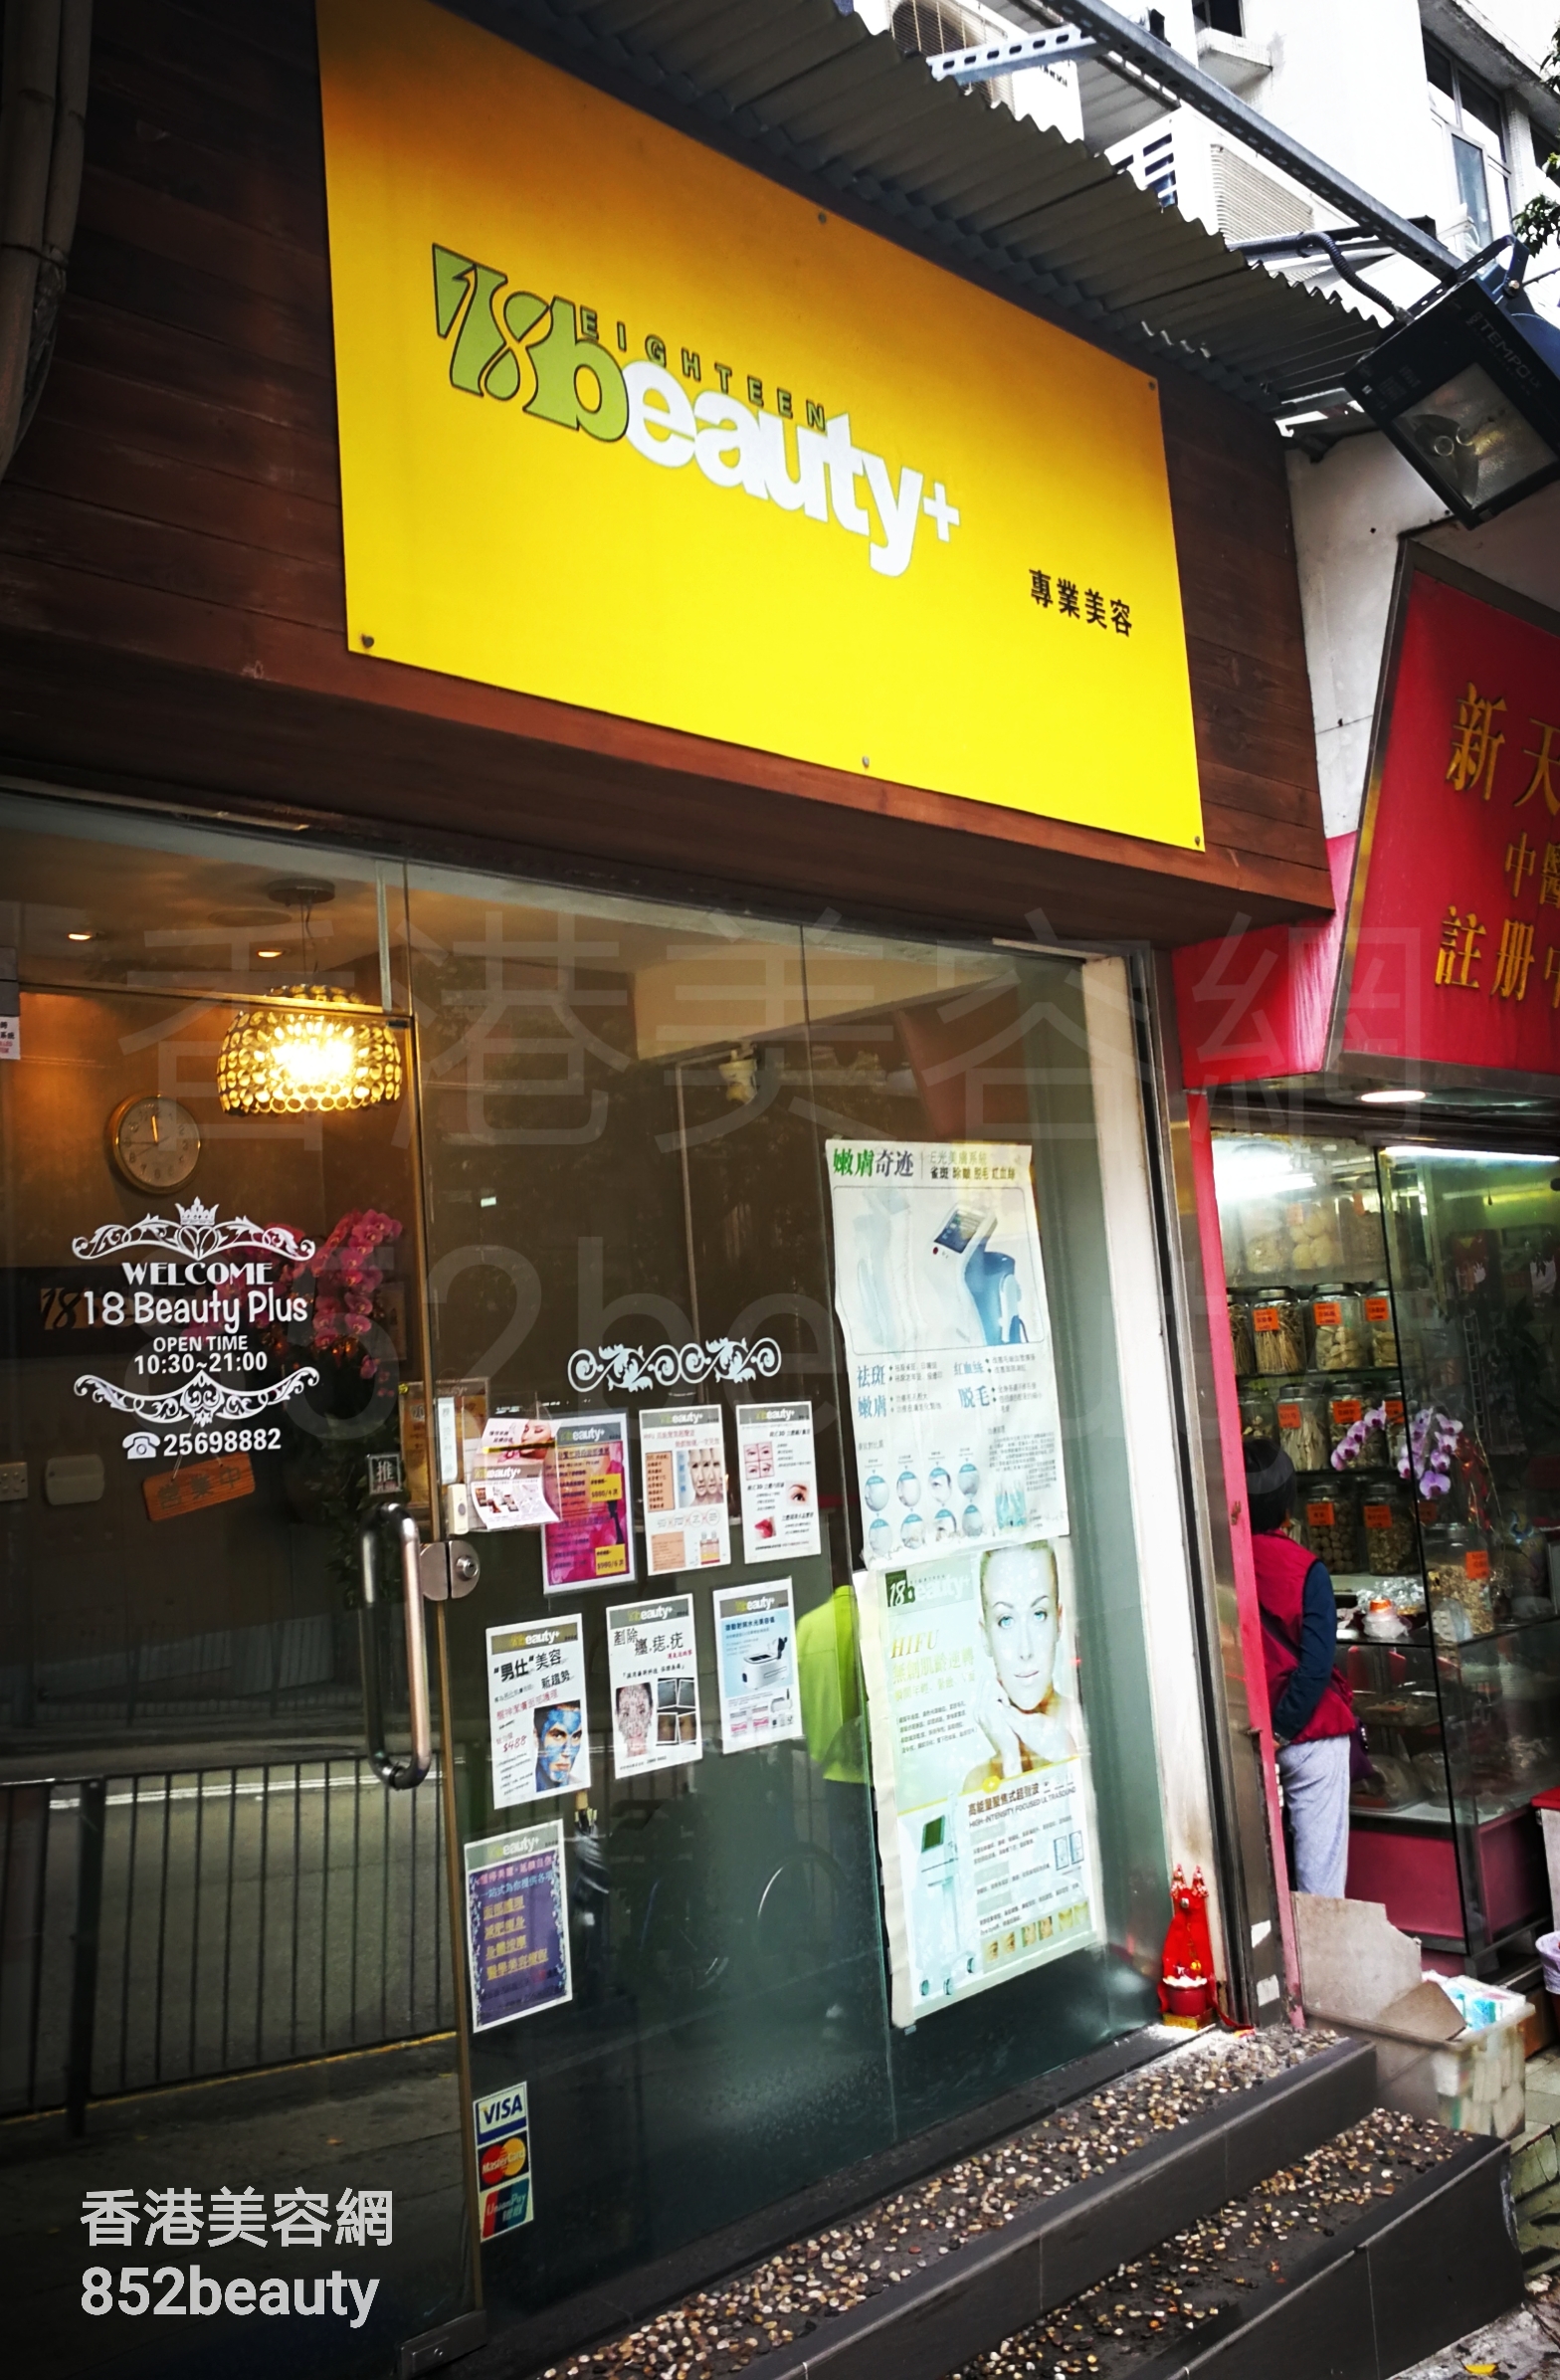 香港美容網 Hong Kong Beauty Salon 美容院 / 美容師: 18 Beauty Plus